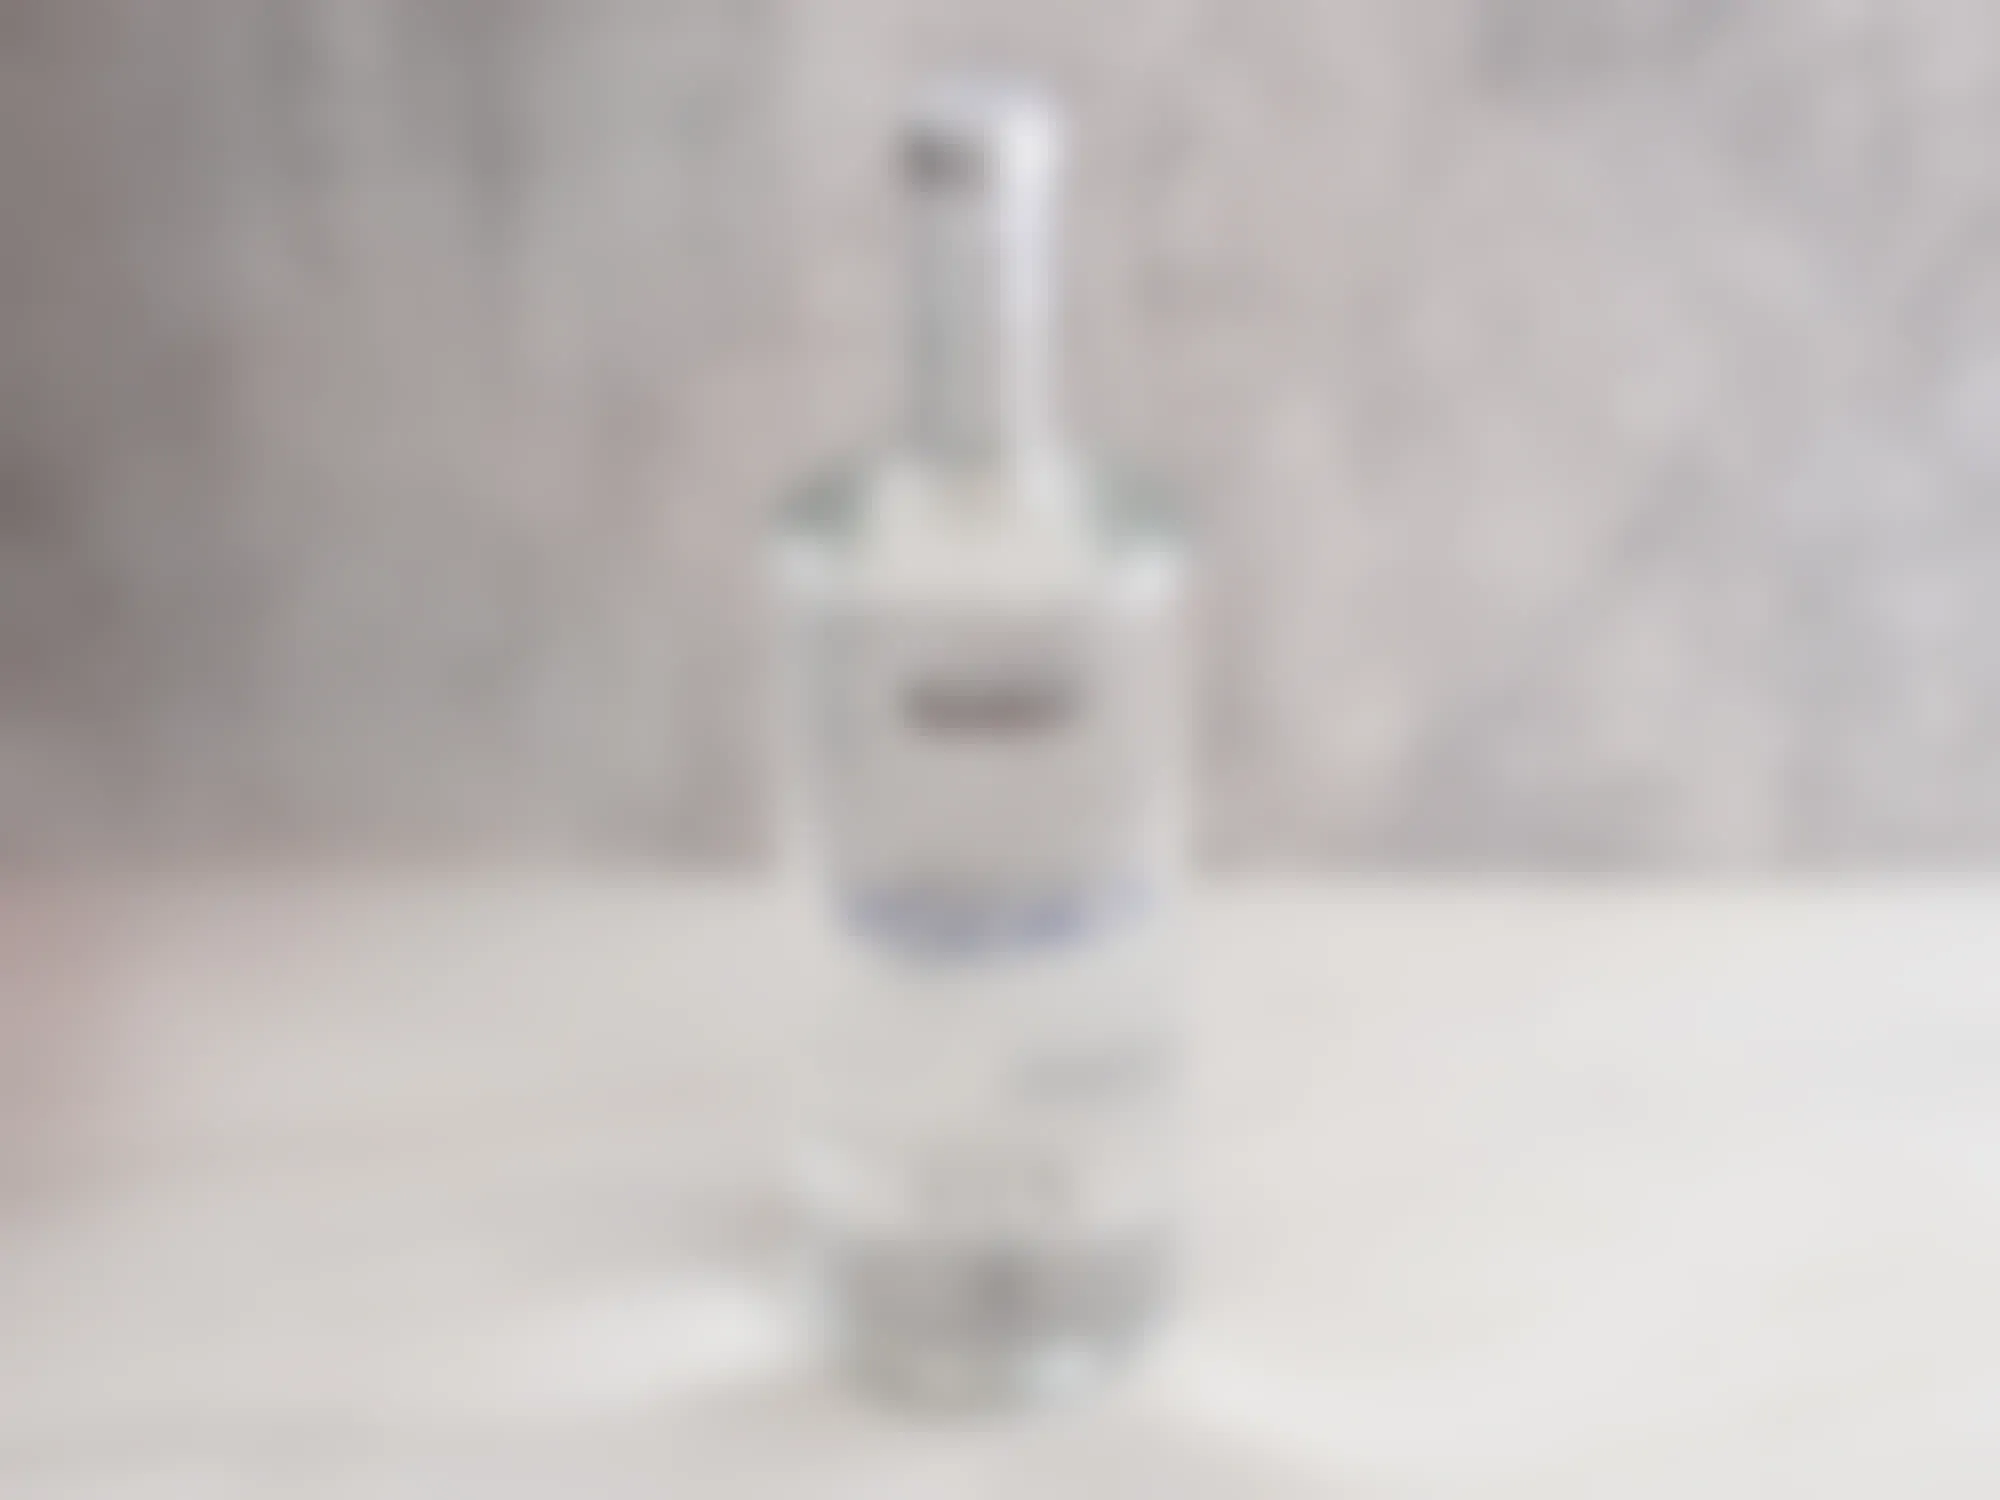 A bottle of Kirkland Vodka on a table